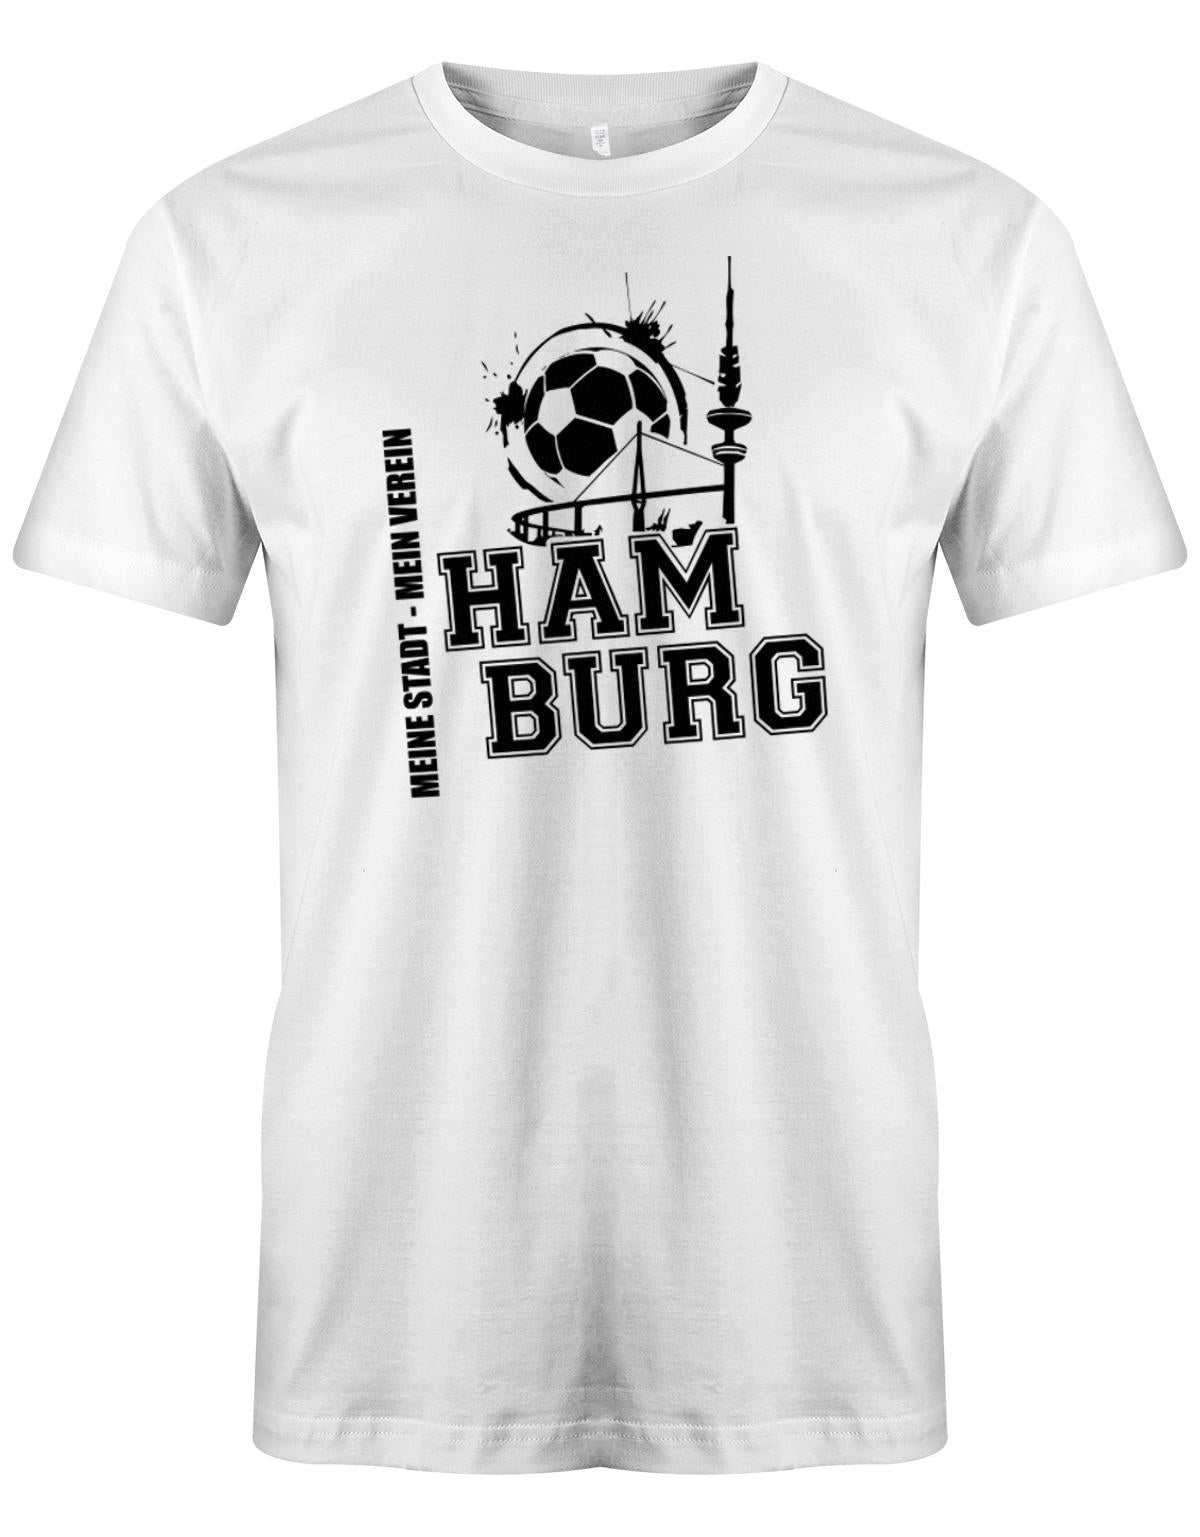 Hamburg-Meine-Stadt-Mein-verein-Herren-Shirt-Weiss